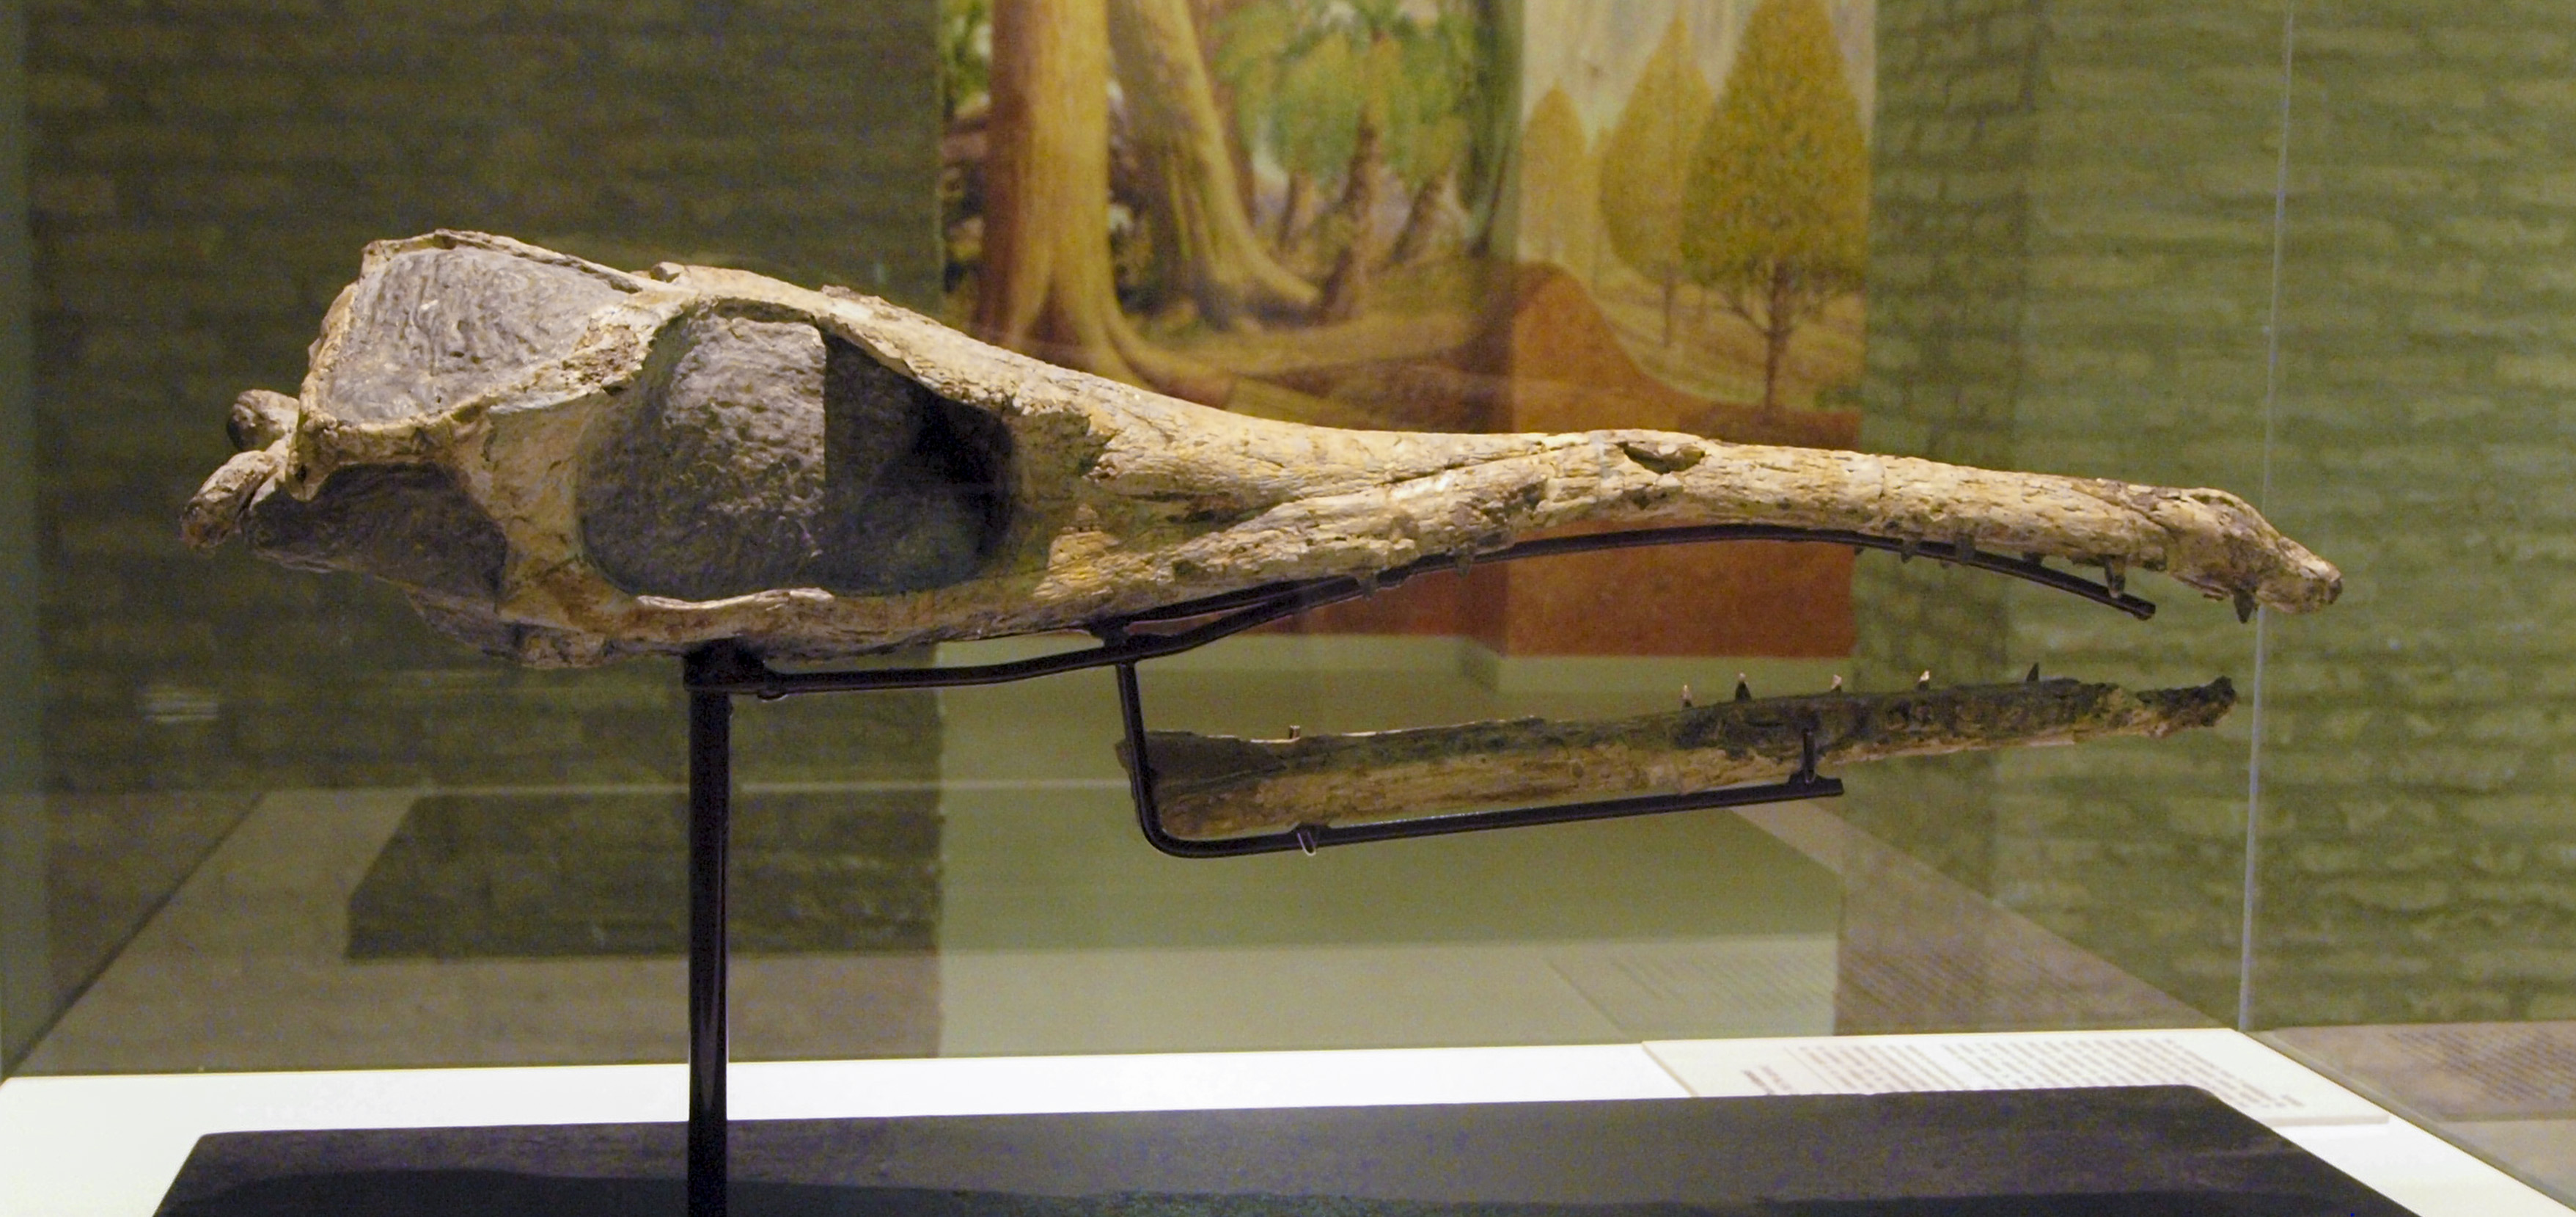 Maledictosuchus riclaensis en el Museo de Ciencias Naturales de Zaragoza.